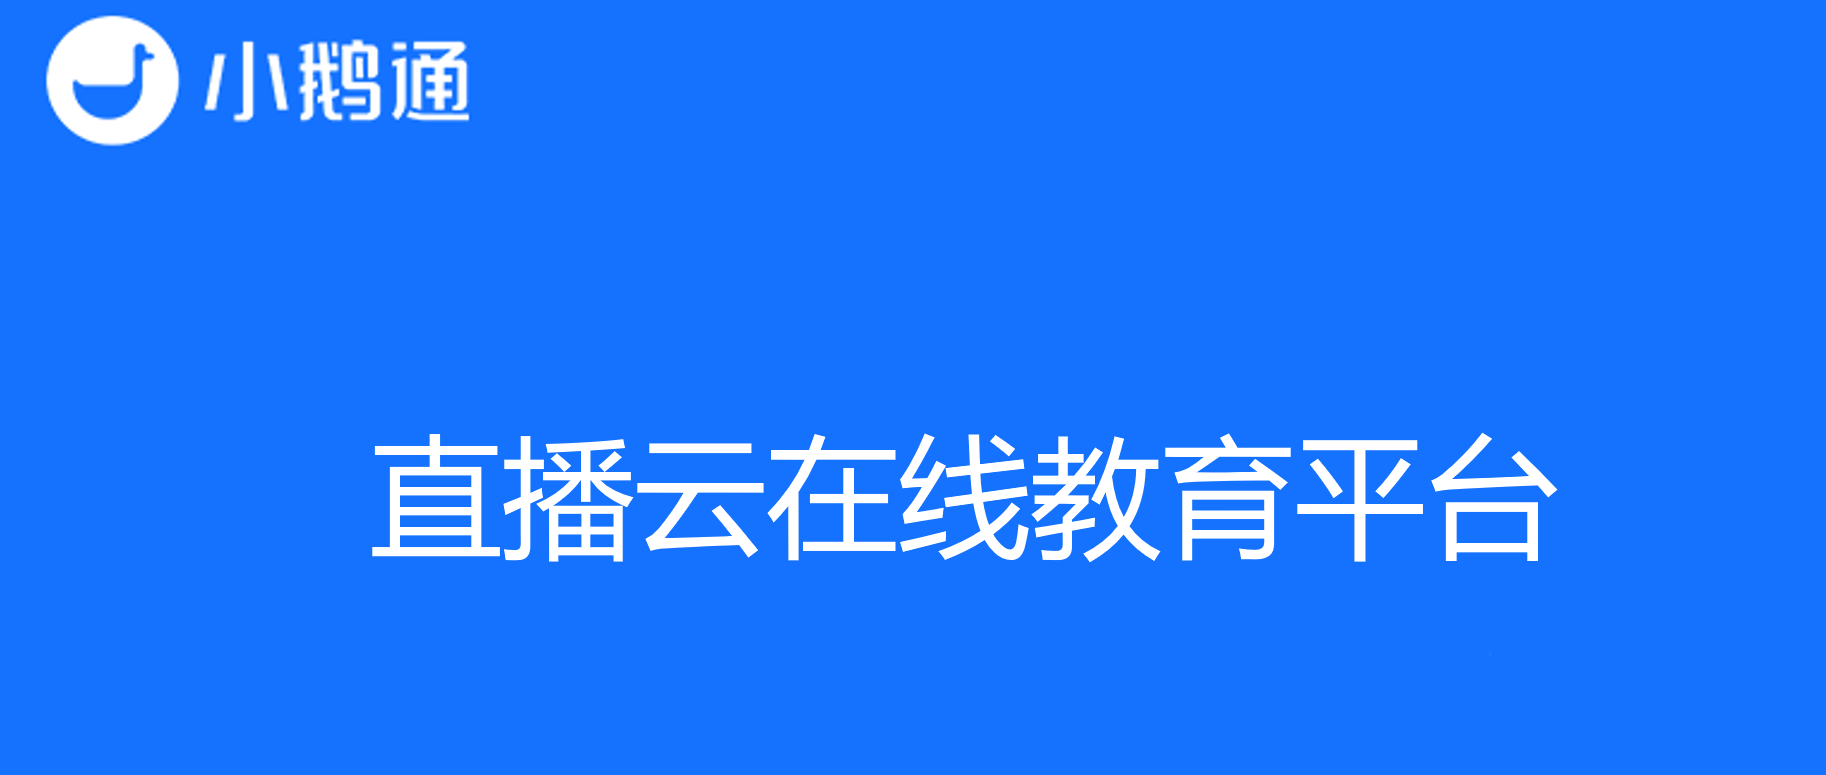 小鹅通——引领教育培训变革的直播云在线教育平台